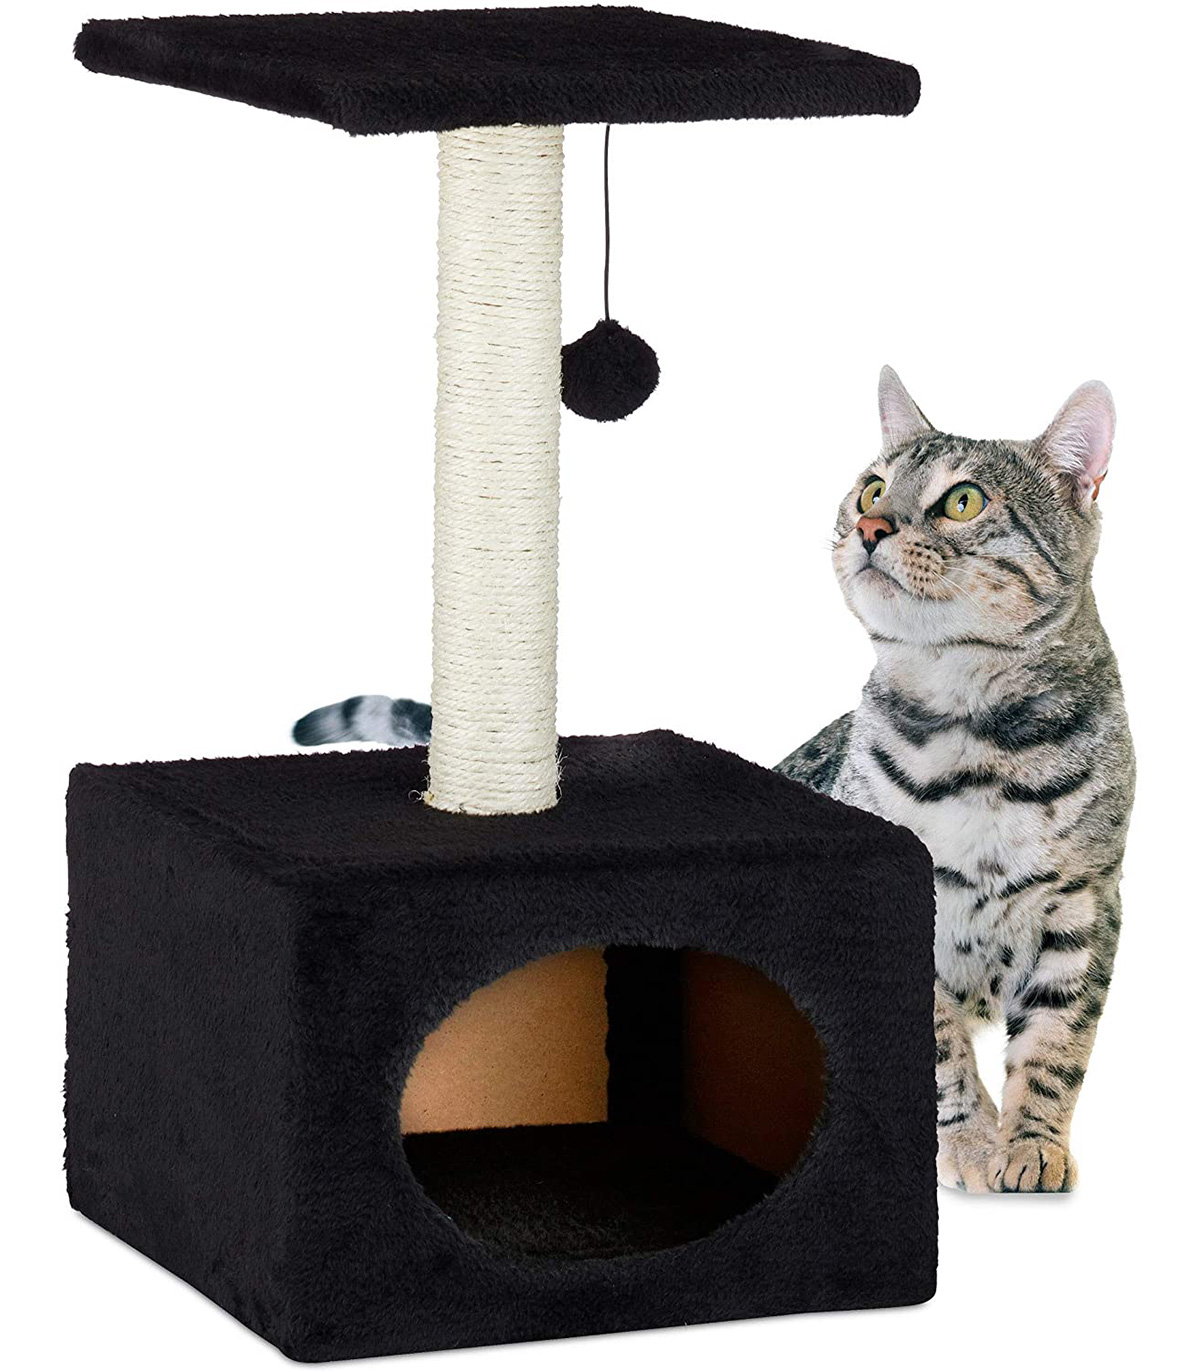 Stalp de zgariat pentru pisici, cu minge de joc si capac de plus, Negru, 31 x 31 x 56 cm Ansambluri pret redus imagine 2022